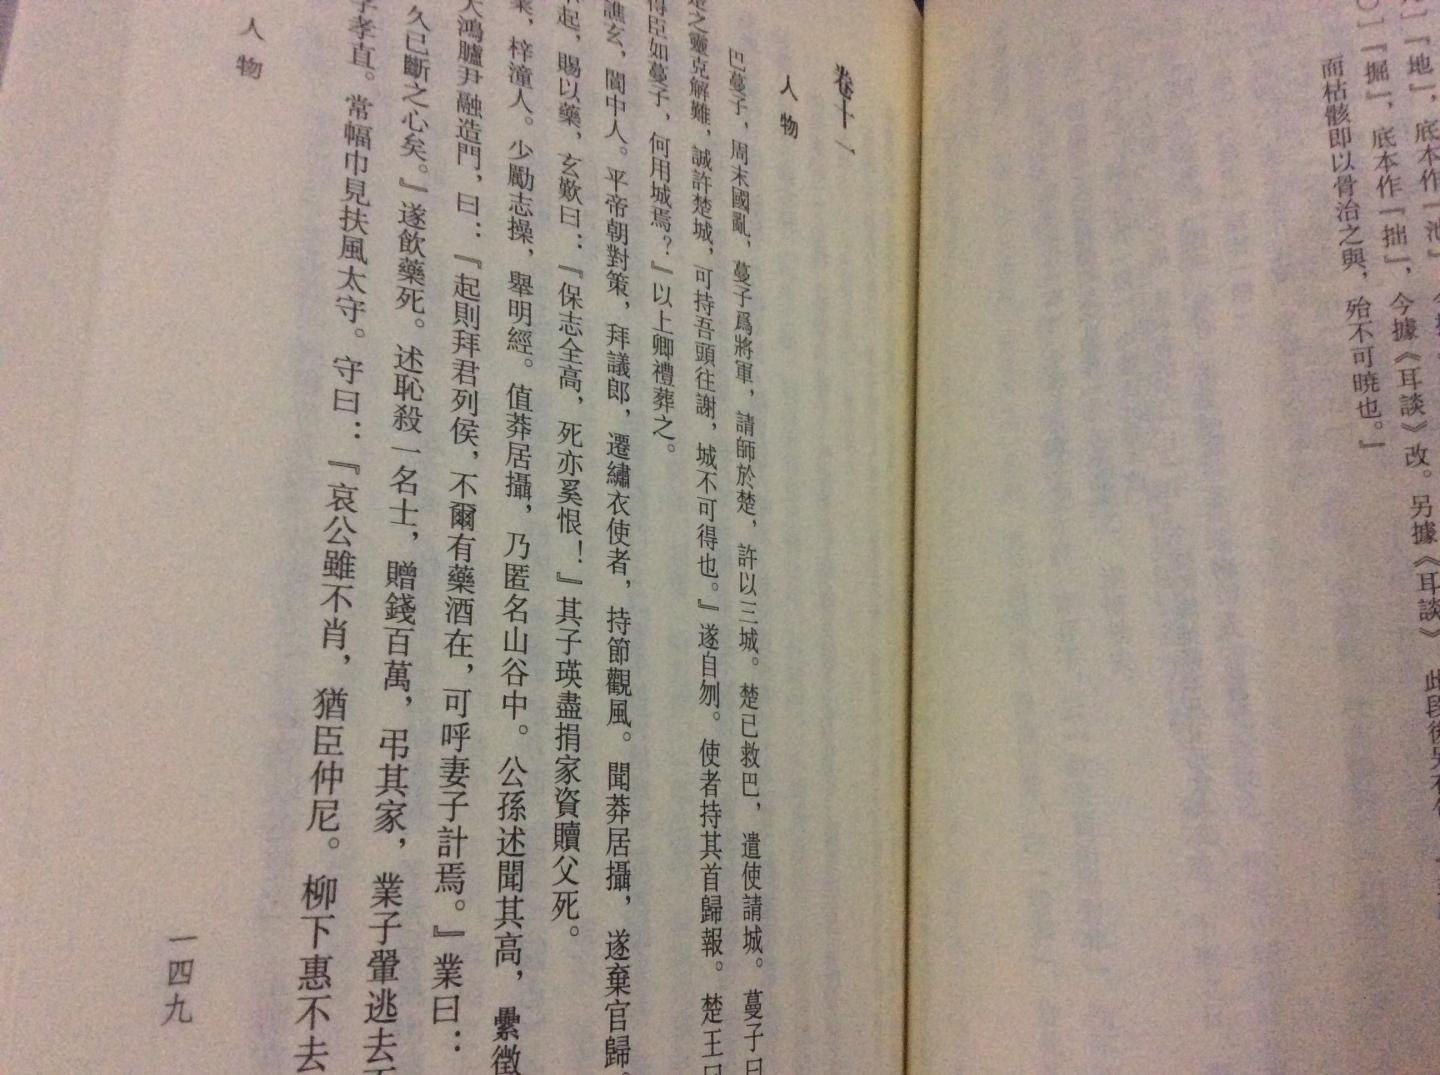 一本关于四川的书，活动时购入，慢慢囤了看吧！繁体竖排，字体比较密，内容庞杂！